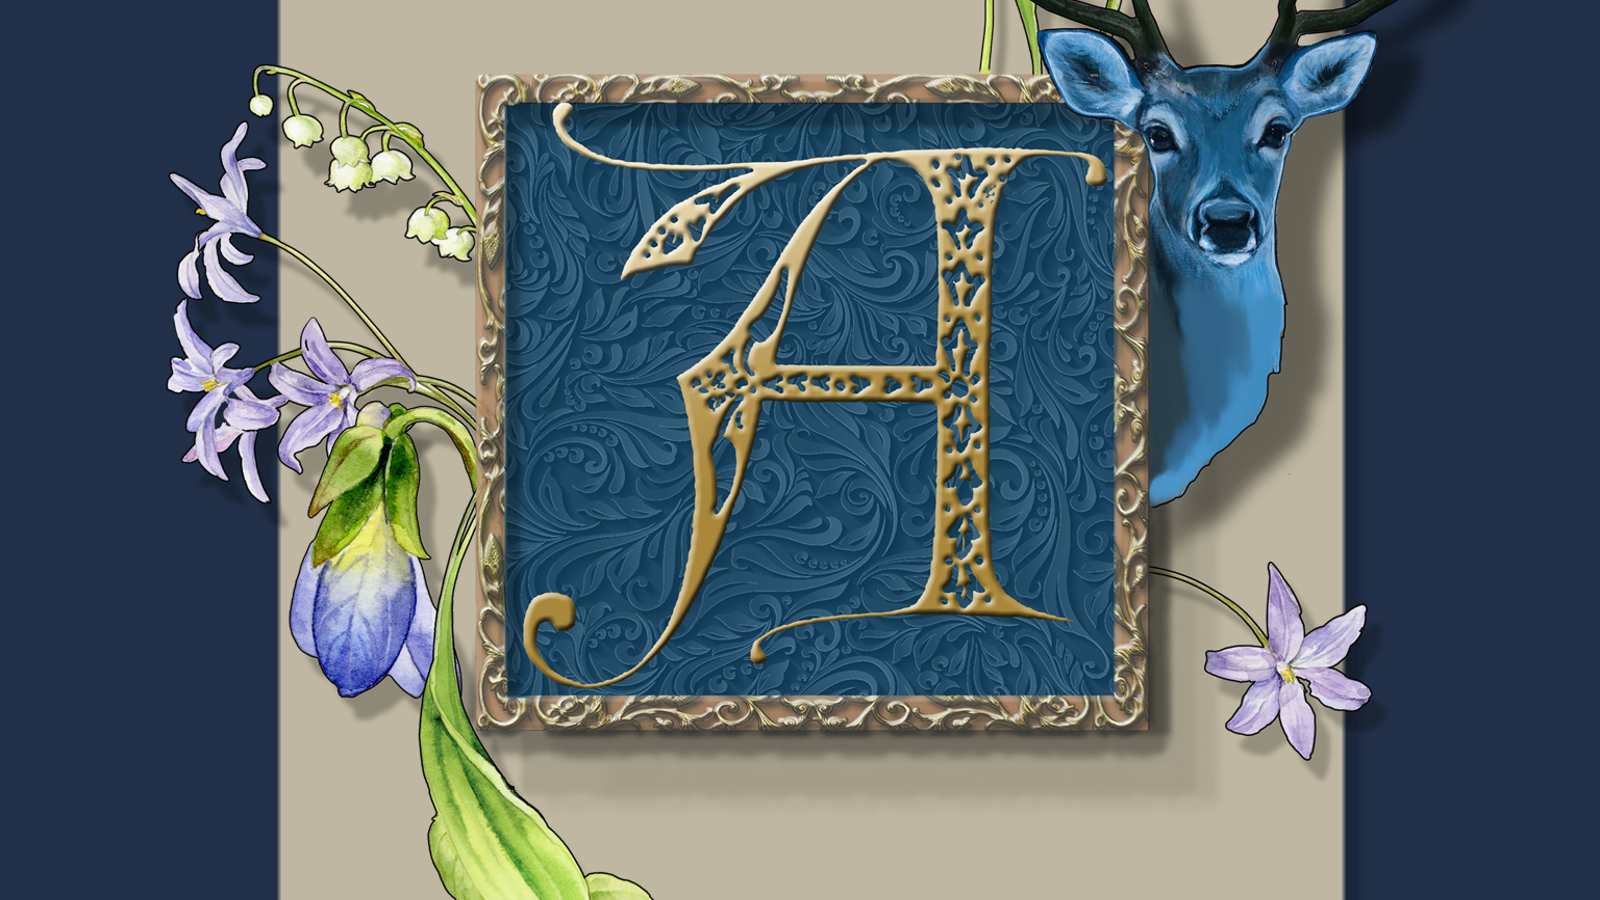 Kuvassa on harmaalla pohjalla raamitettu iso a-kirjain, joka on koristeellinen.  Se on tumman sinisellä pohjalla ja kuvassa on kukkakiehkura ja oikealla peuran pää.